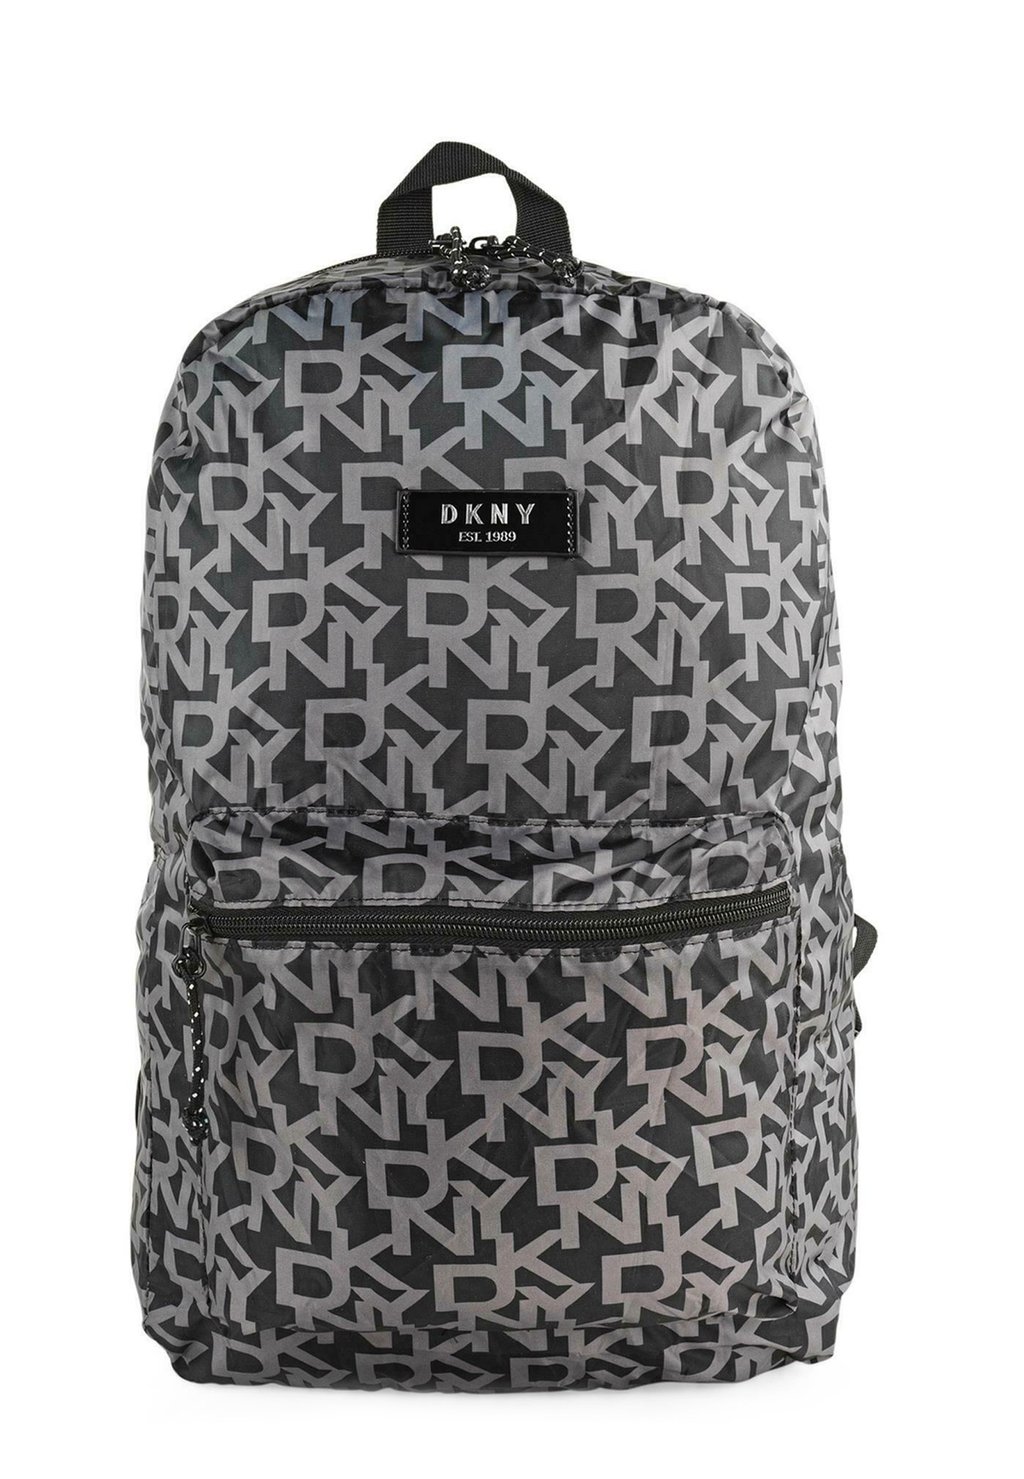 рюкзак lerox margelisch цвет charcoal Рюкзак DKNY, цвет Black Charcoal